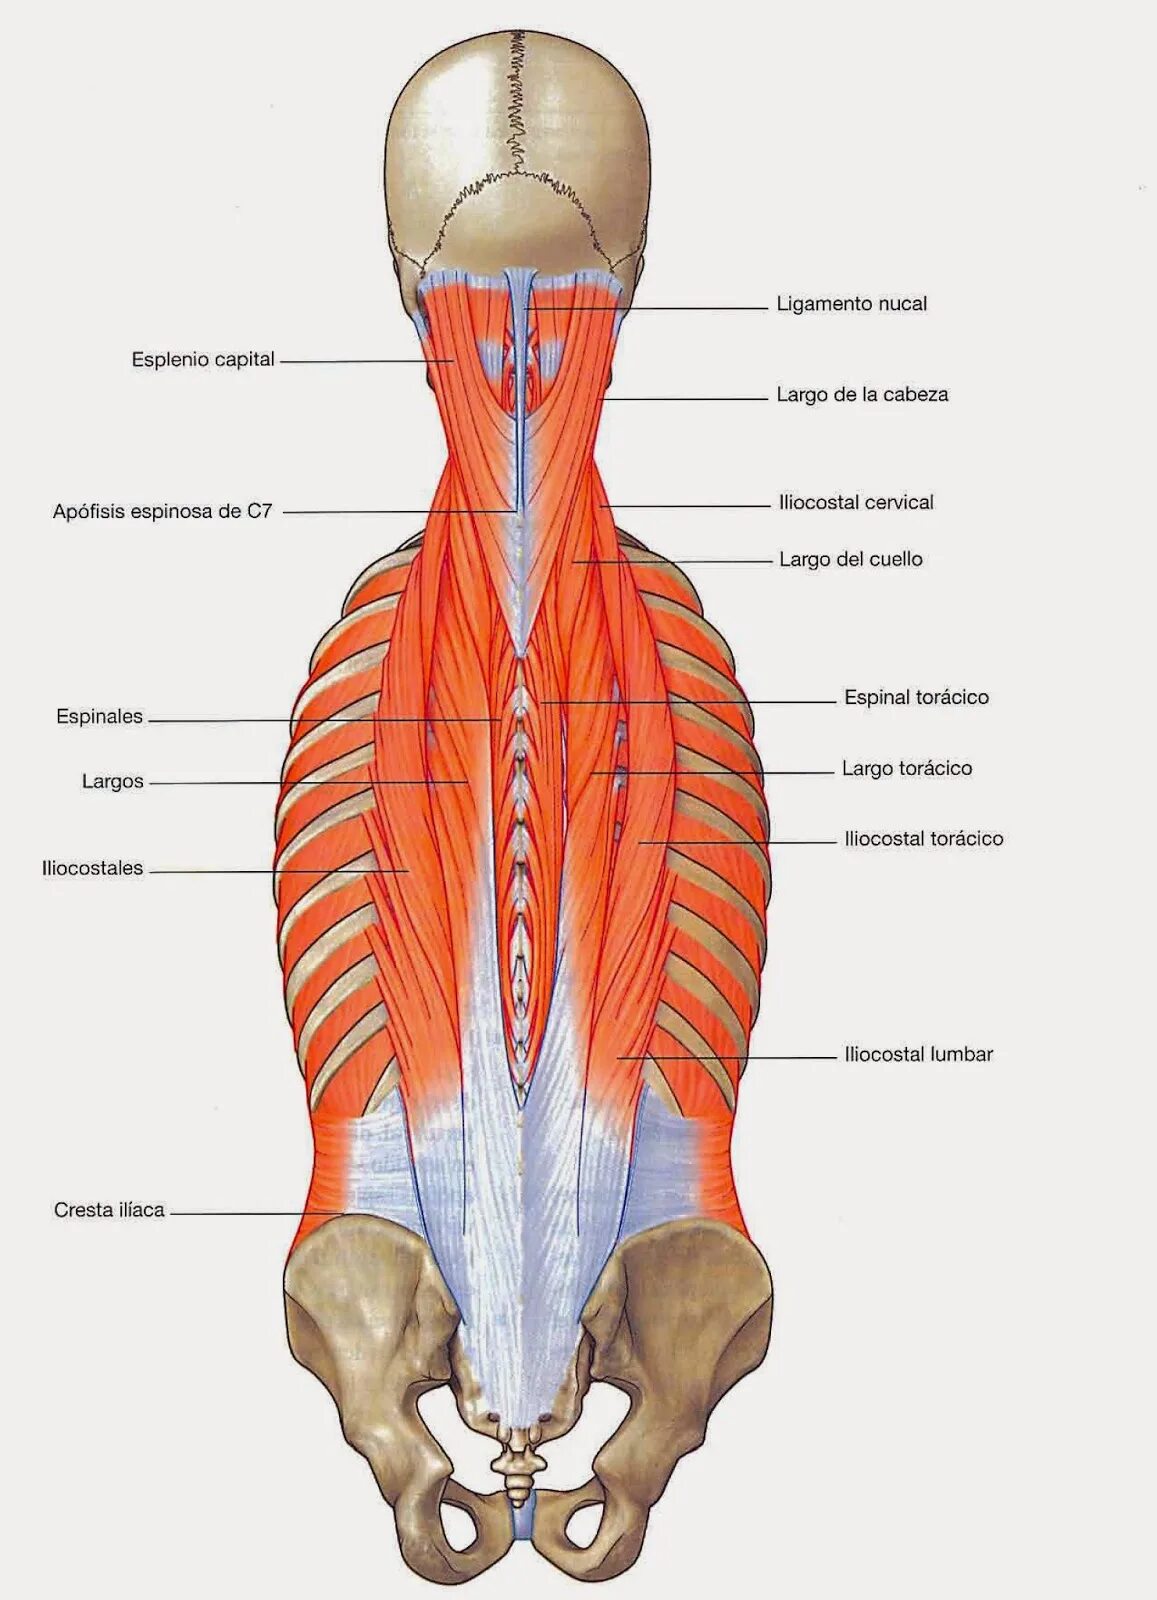 Разгибатели мышц спины и позвоночника. Мышца выпрямляющая позвоночник спины анатомия. Мышцы разгибатели позвоночника. Мышца выпрямляющая позвоночник иннервация.